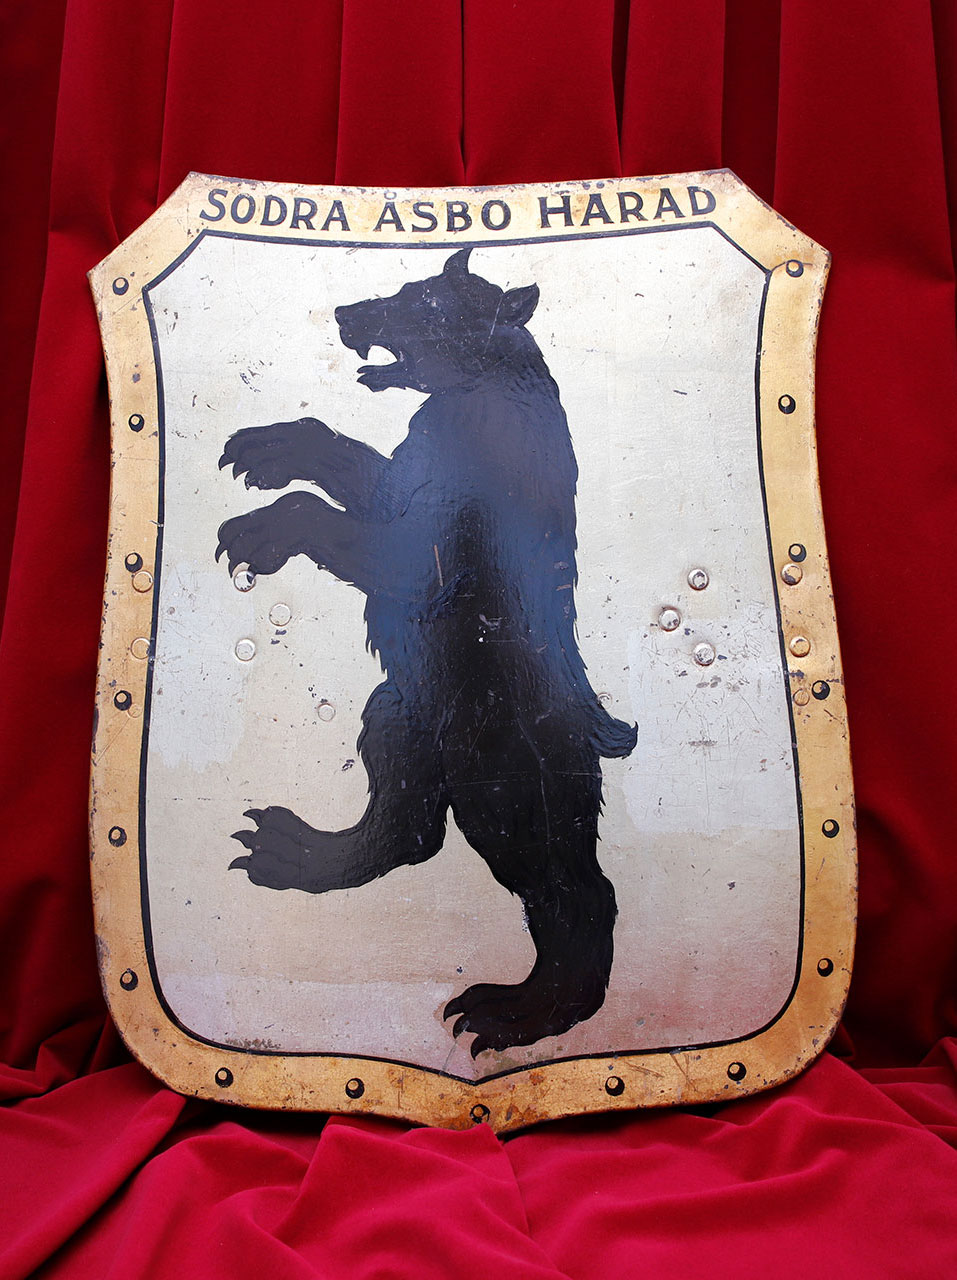 Grå sköld med guldram och svart björn. Överst står texten "Södra Åsbo härad".